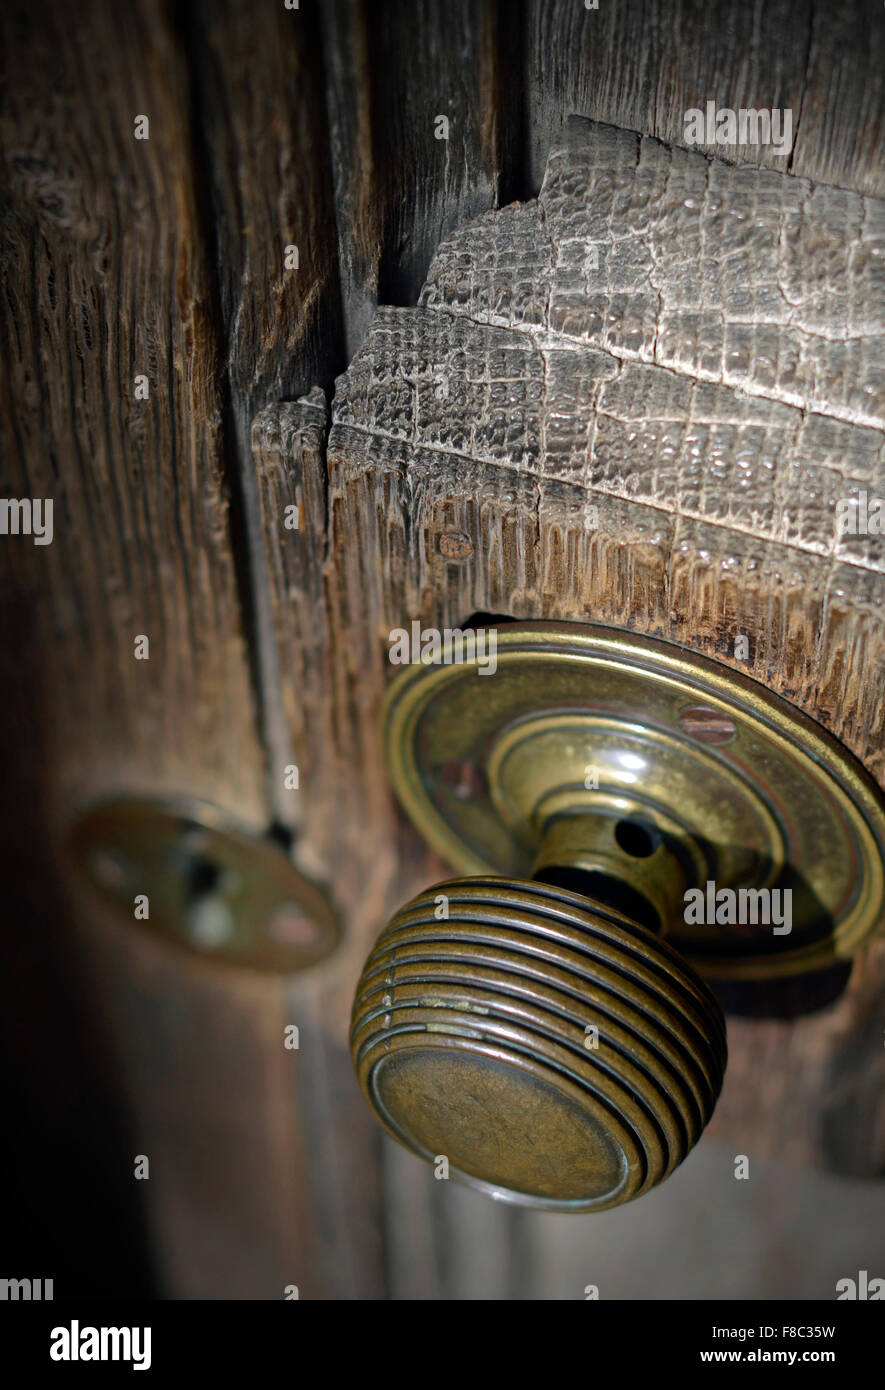 old wooden door knob Stock Photo